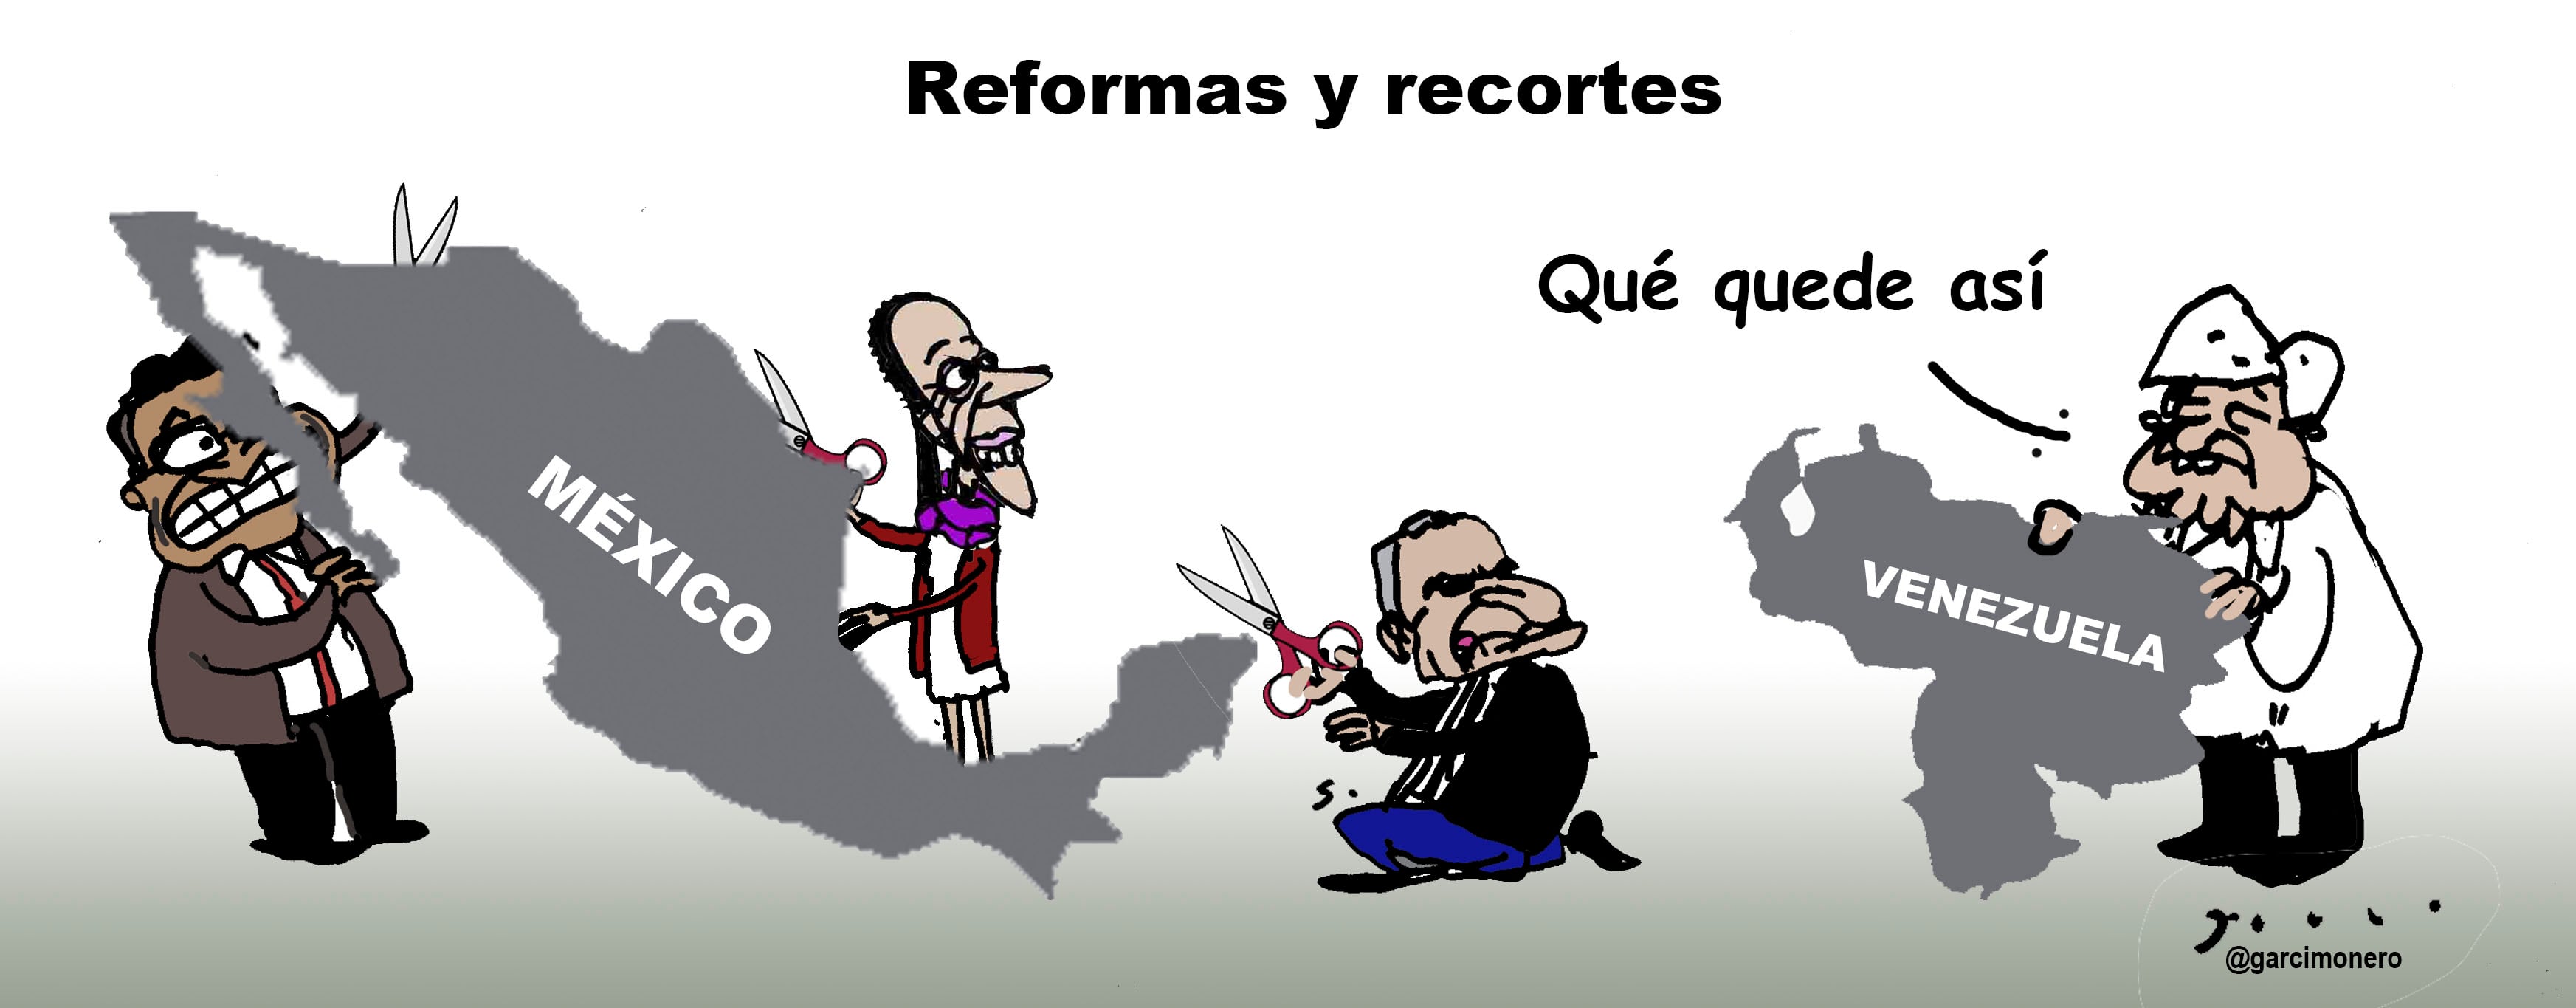 Reformas y recortes